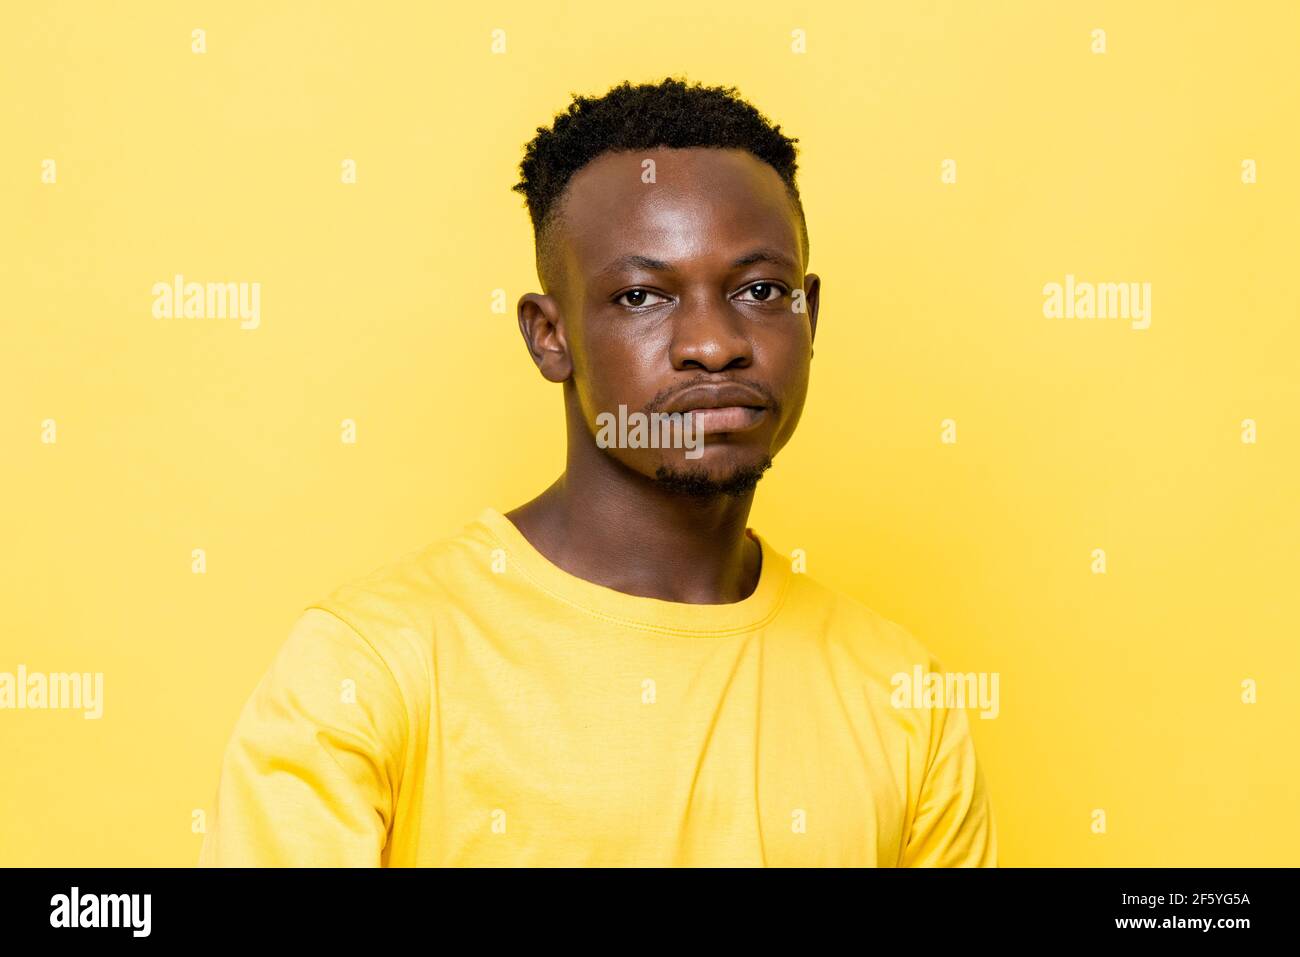 Le jeune homme africain est face sur fond isolé jaune stuido Banque D'Images